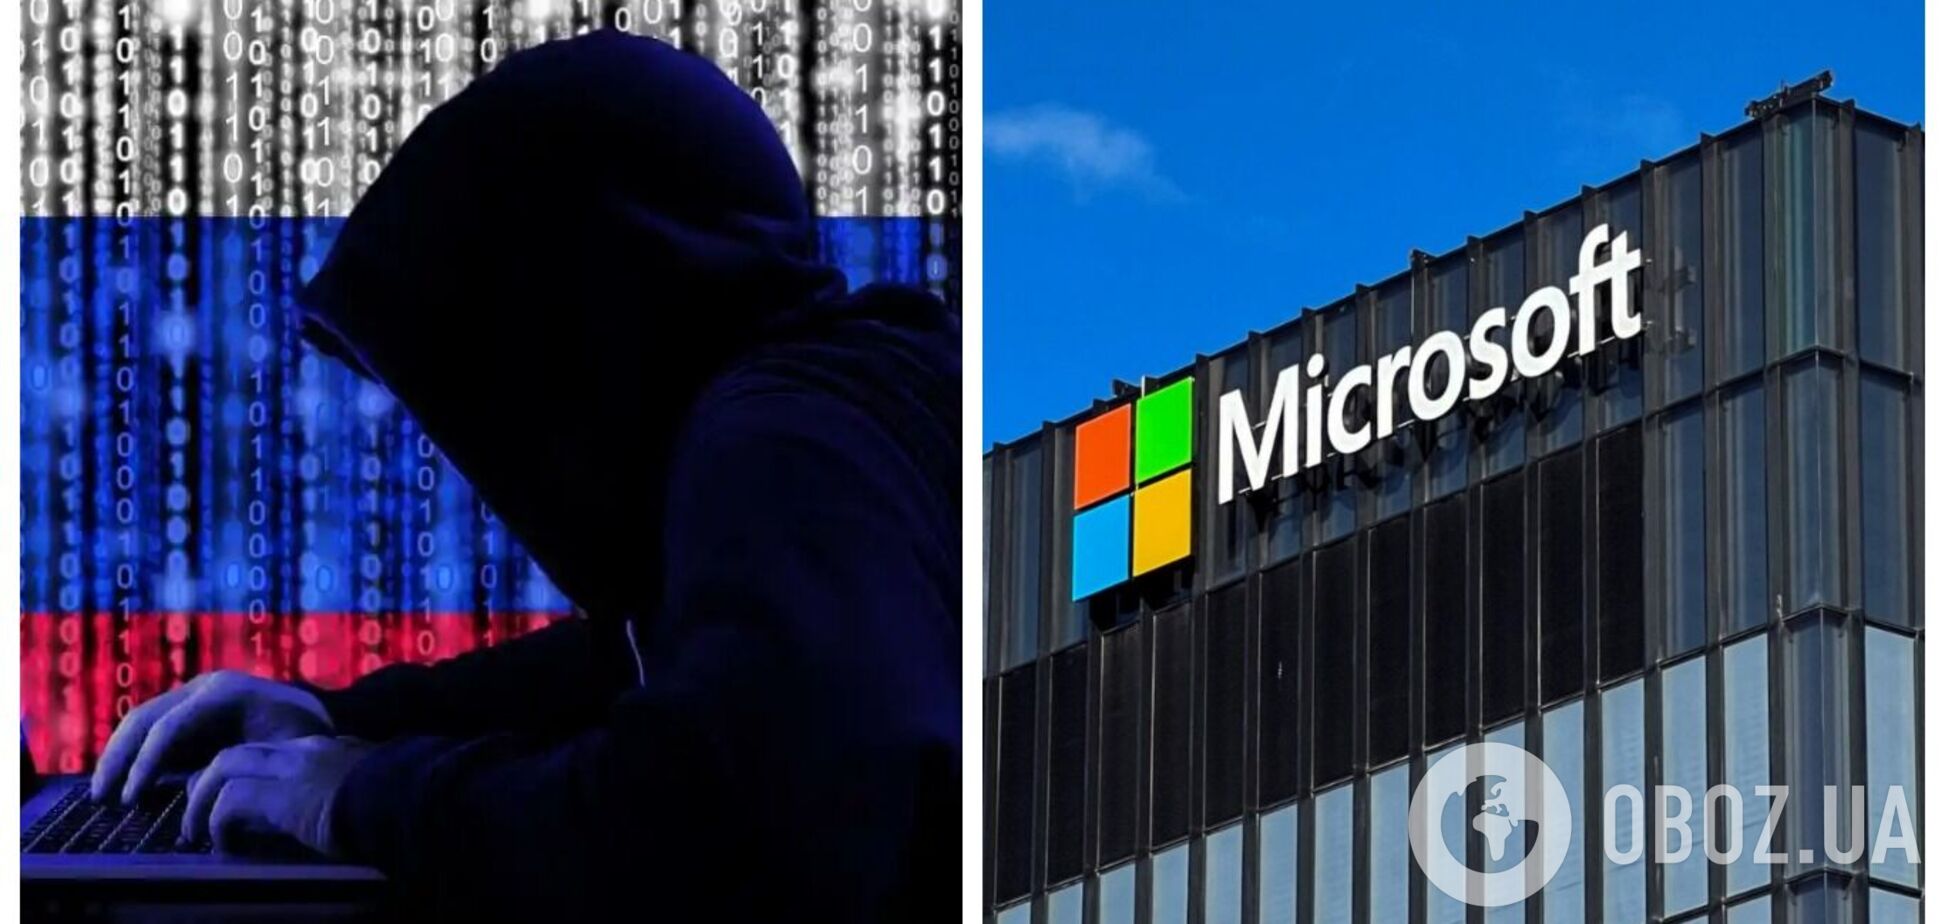 Российские хакеры совершили атаку на Microsoft: что известно